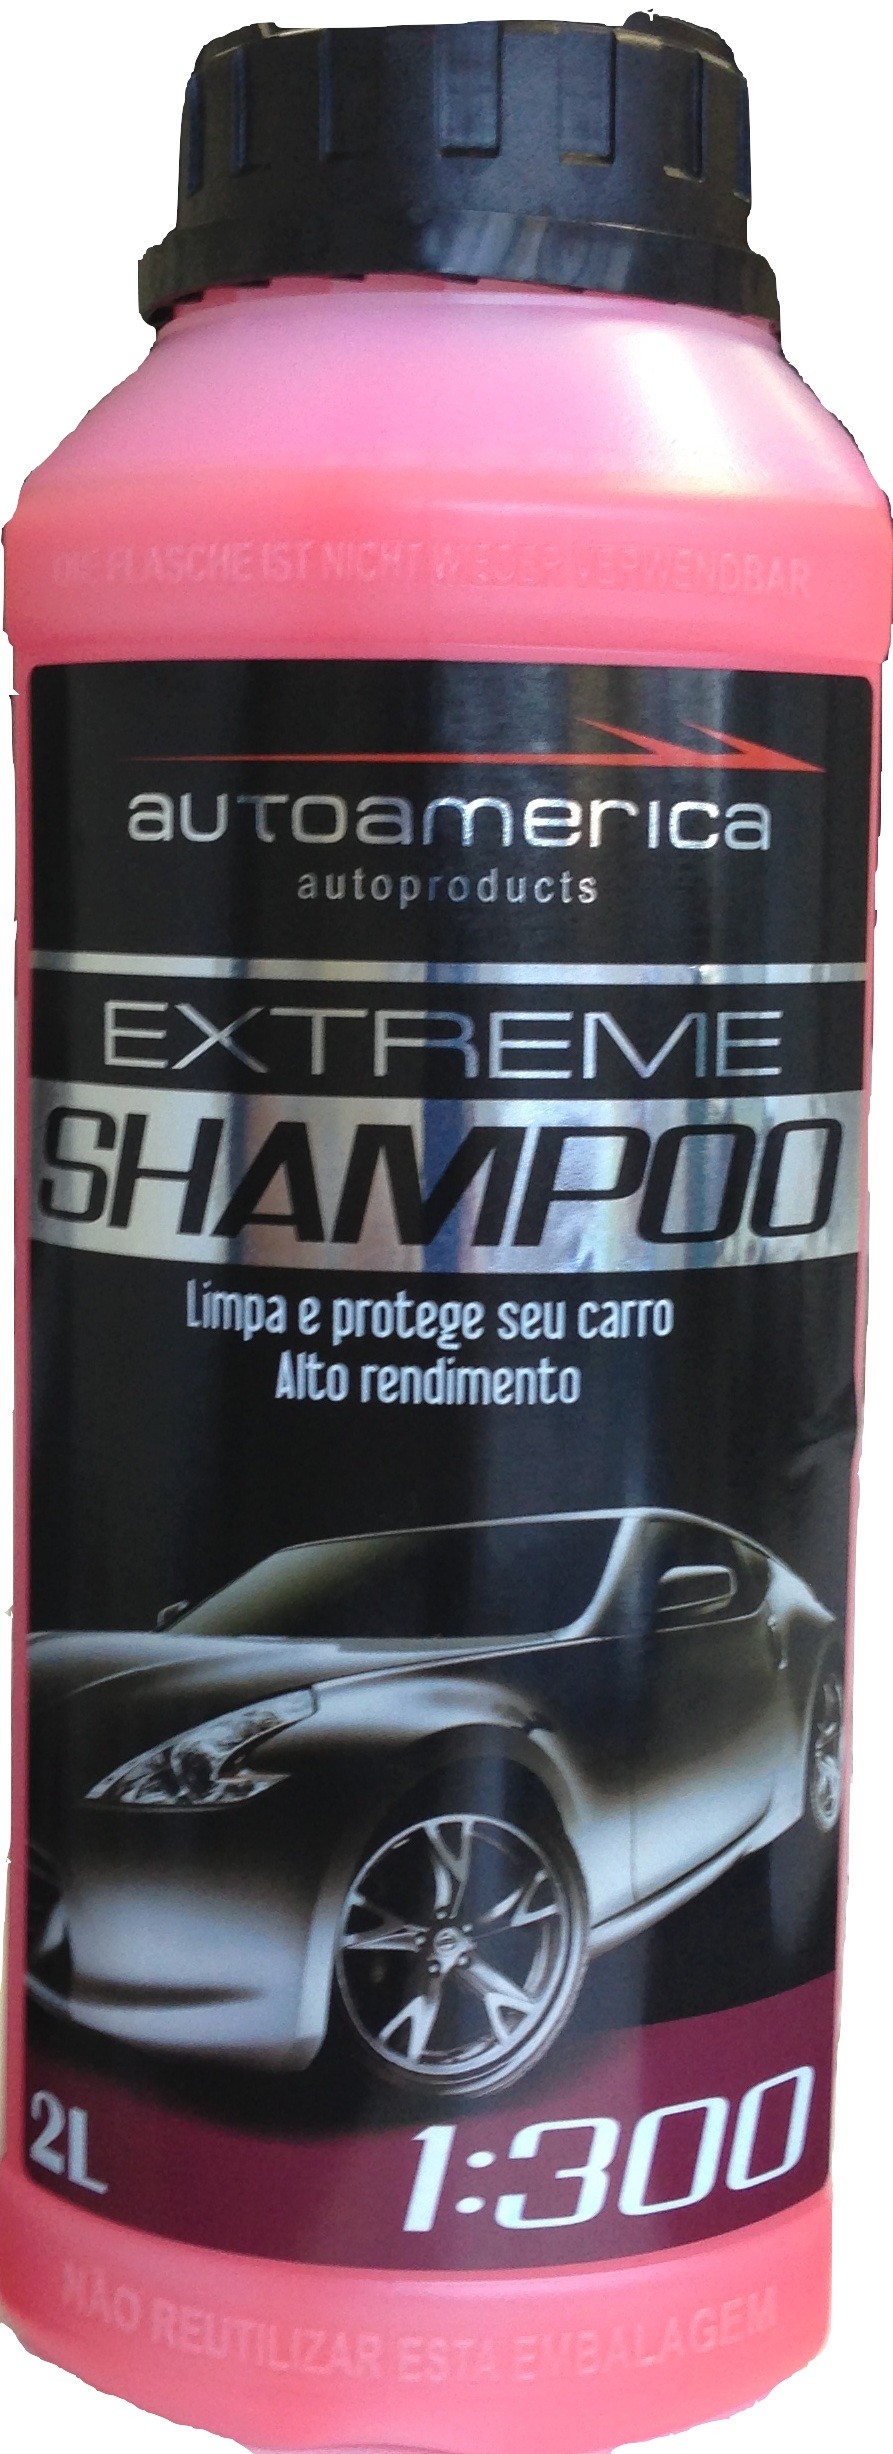 Shampoo Extreme Autoamérica 2l